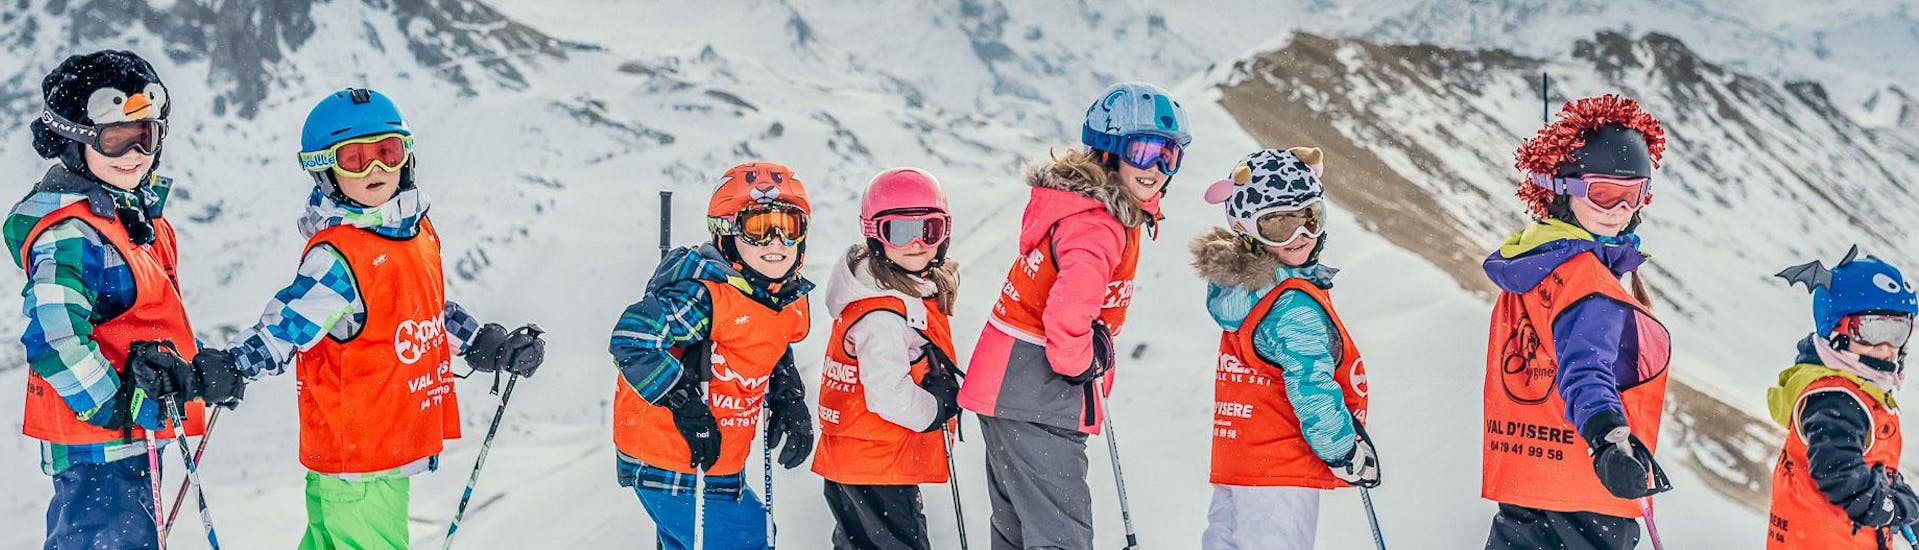 Clases de esquí para niños a partir de 3 años.